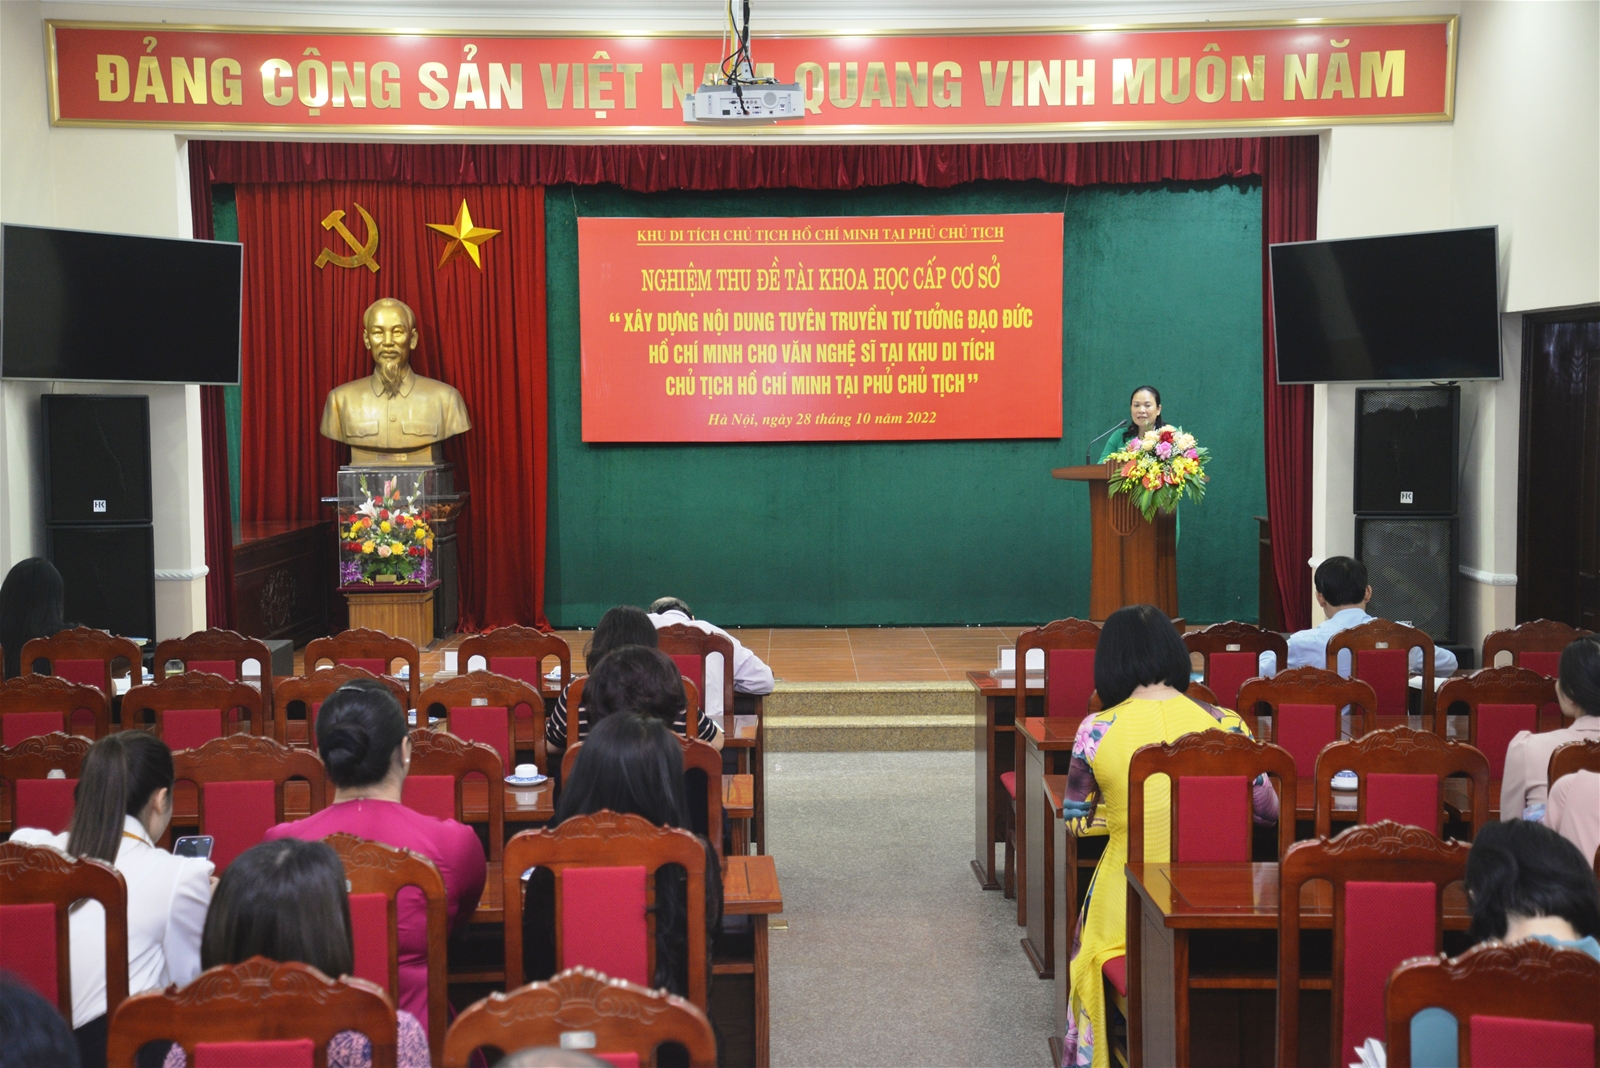 Nghiệm thu đề tài khoa học cấp cơ sở: “Xây dựng nội dung tuyên truyền tư tưởng đạo đức Hồ Chí Minh cho văn nghệ sĩ tại Khu Di tích Chủ tịch Hồ Chí Minh tại Phủ Chủ tịch” (ngày 27/10/2022)